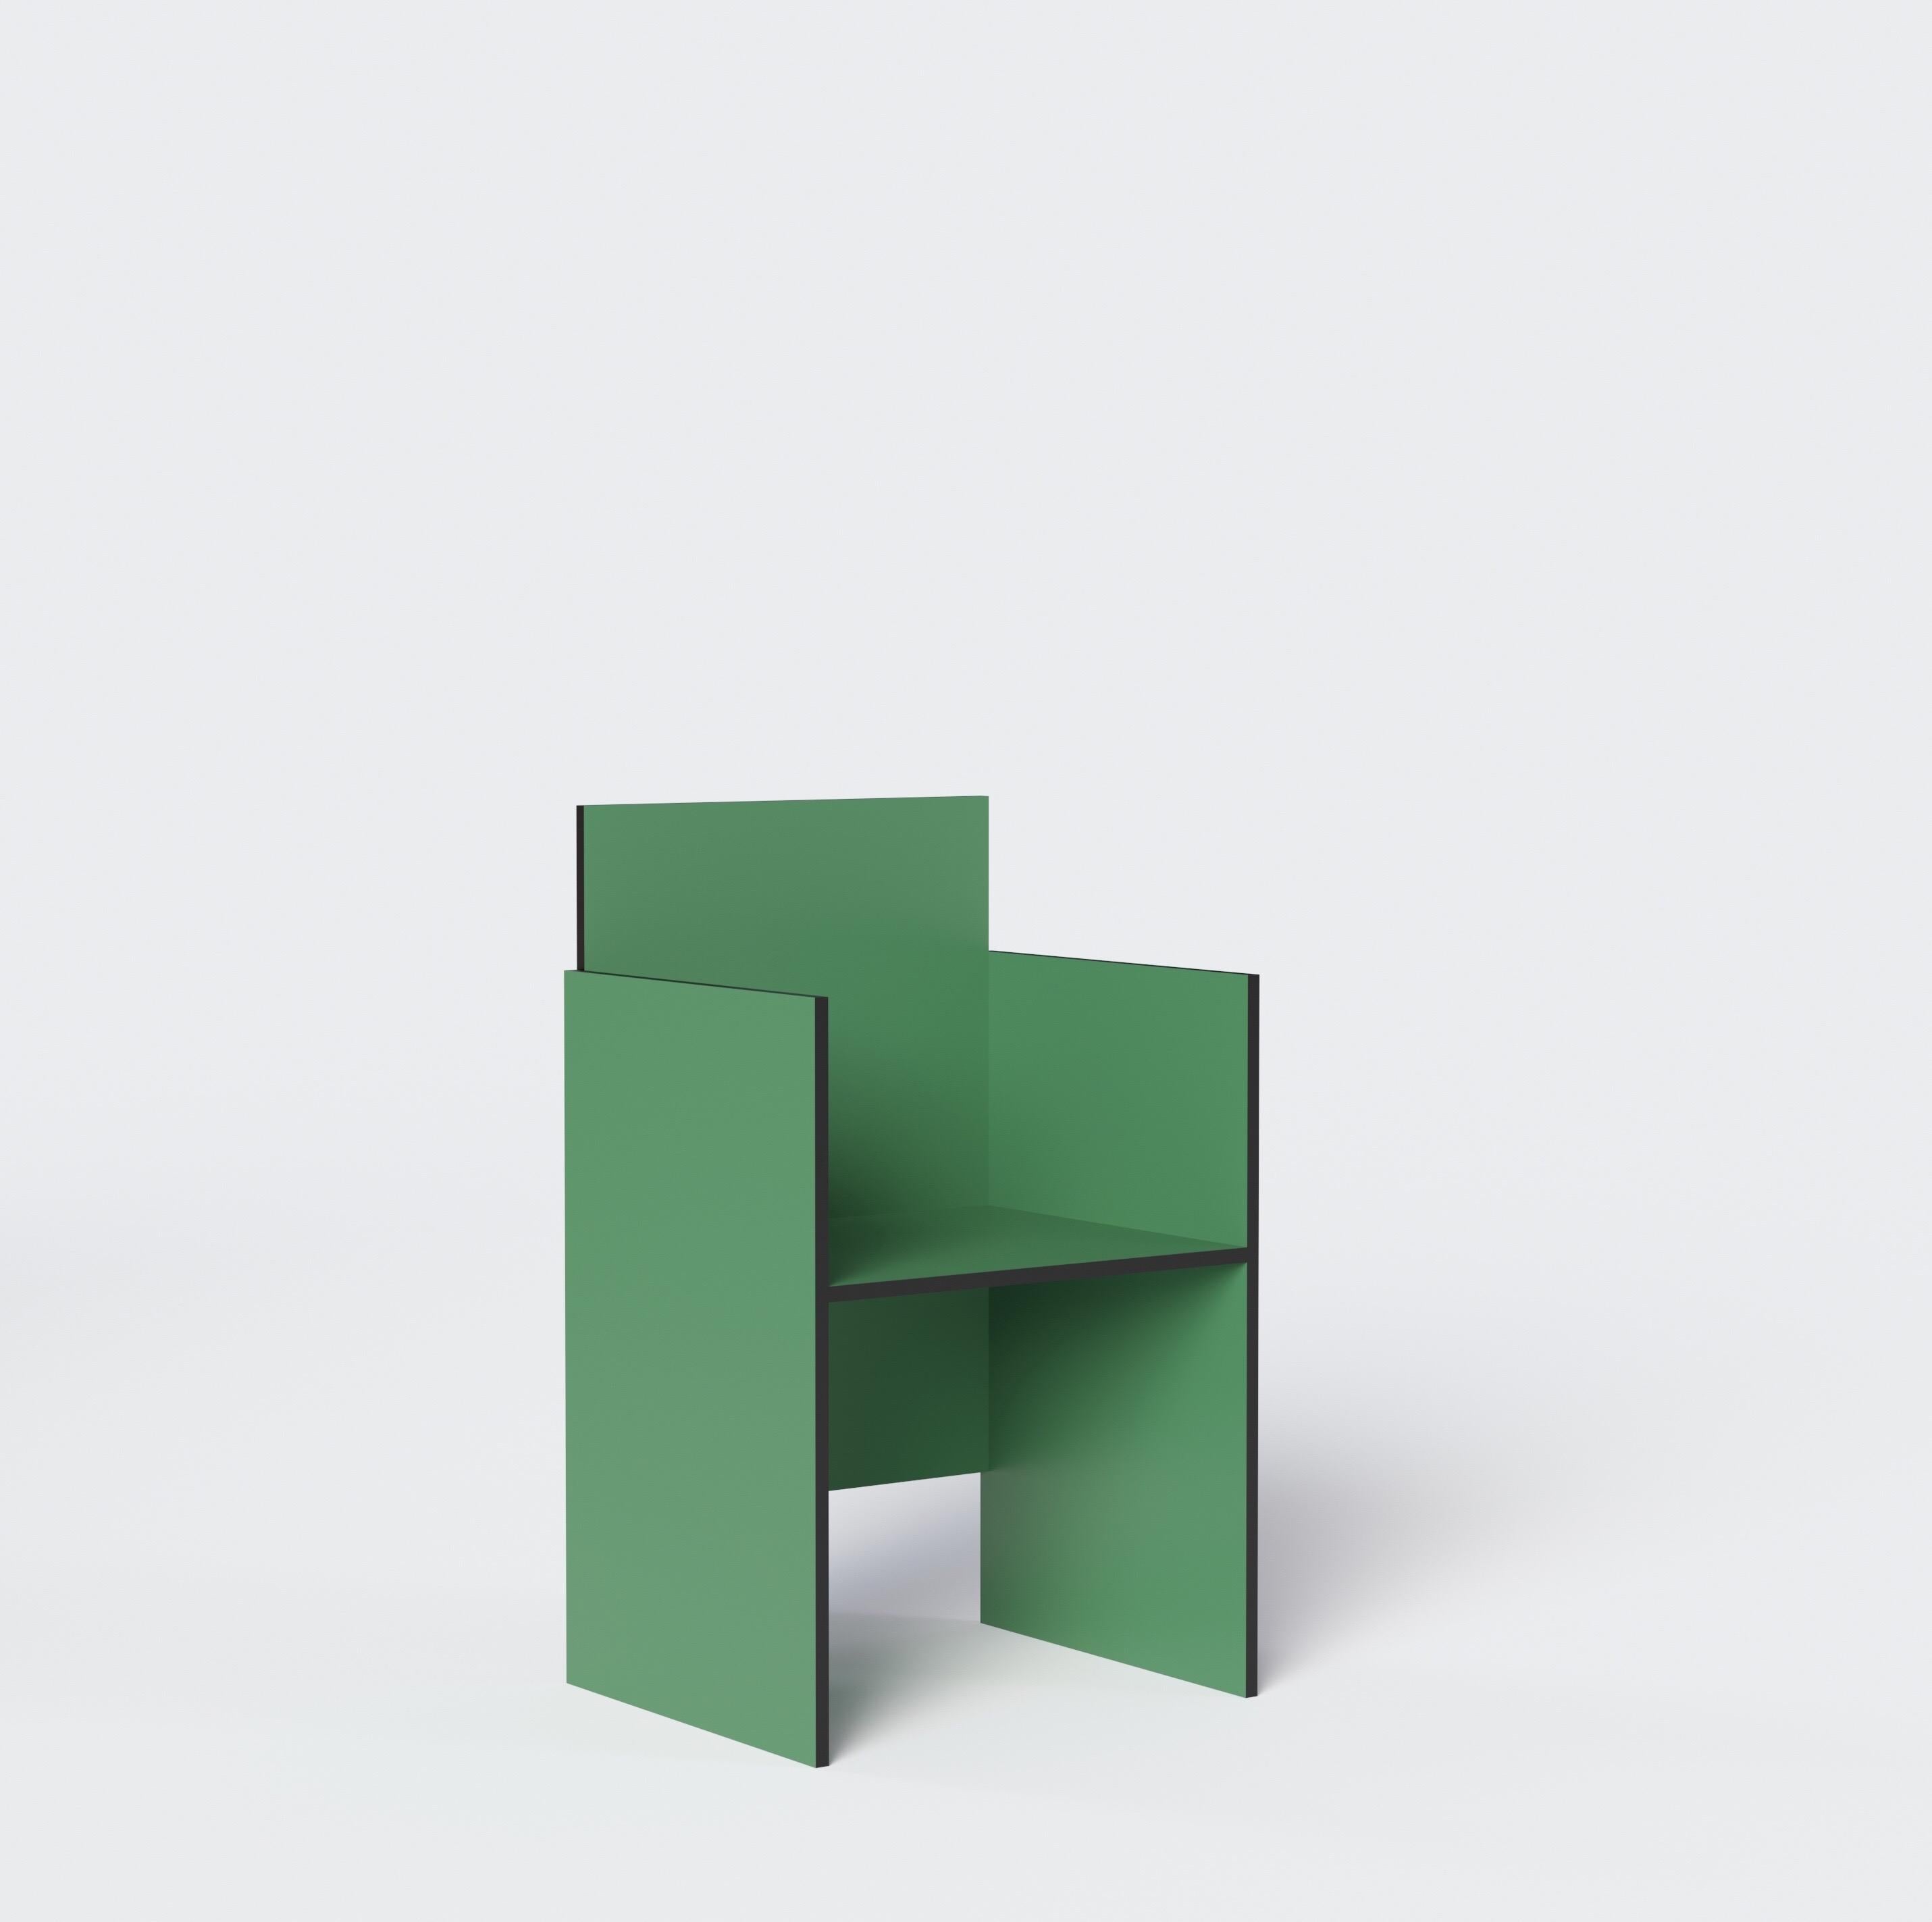 Geometrischer und minimalistischer Stuhl des russischen Designers Dmitry Samygin. Inspiriert von Gerrit Rietveld und dem Bauhaus-Stil. 

Sperrholz
88.5 x 45 x 45 cm

Wählen Sie Ihre Farbe! 

Zwei Versionen:
- Ein Arm (rechts oder links)
-